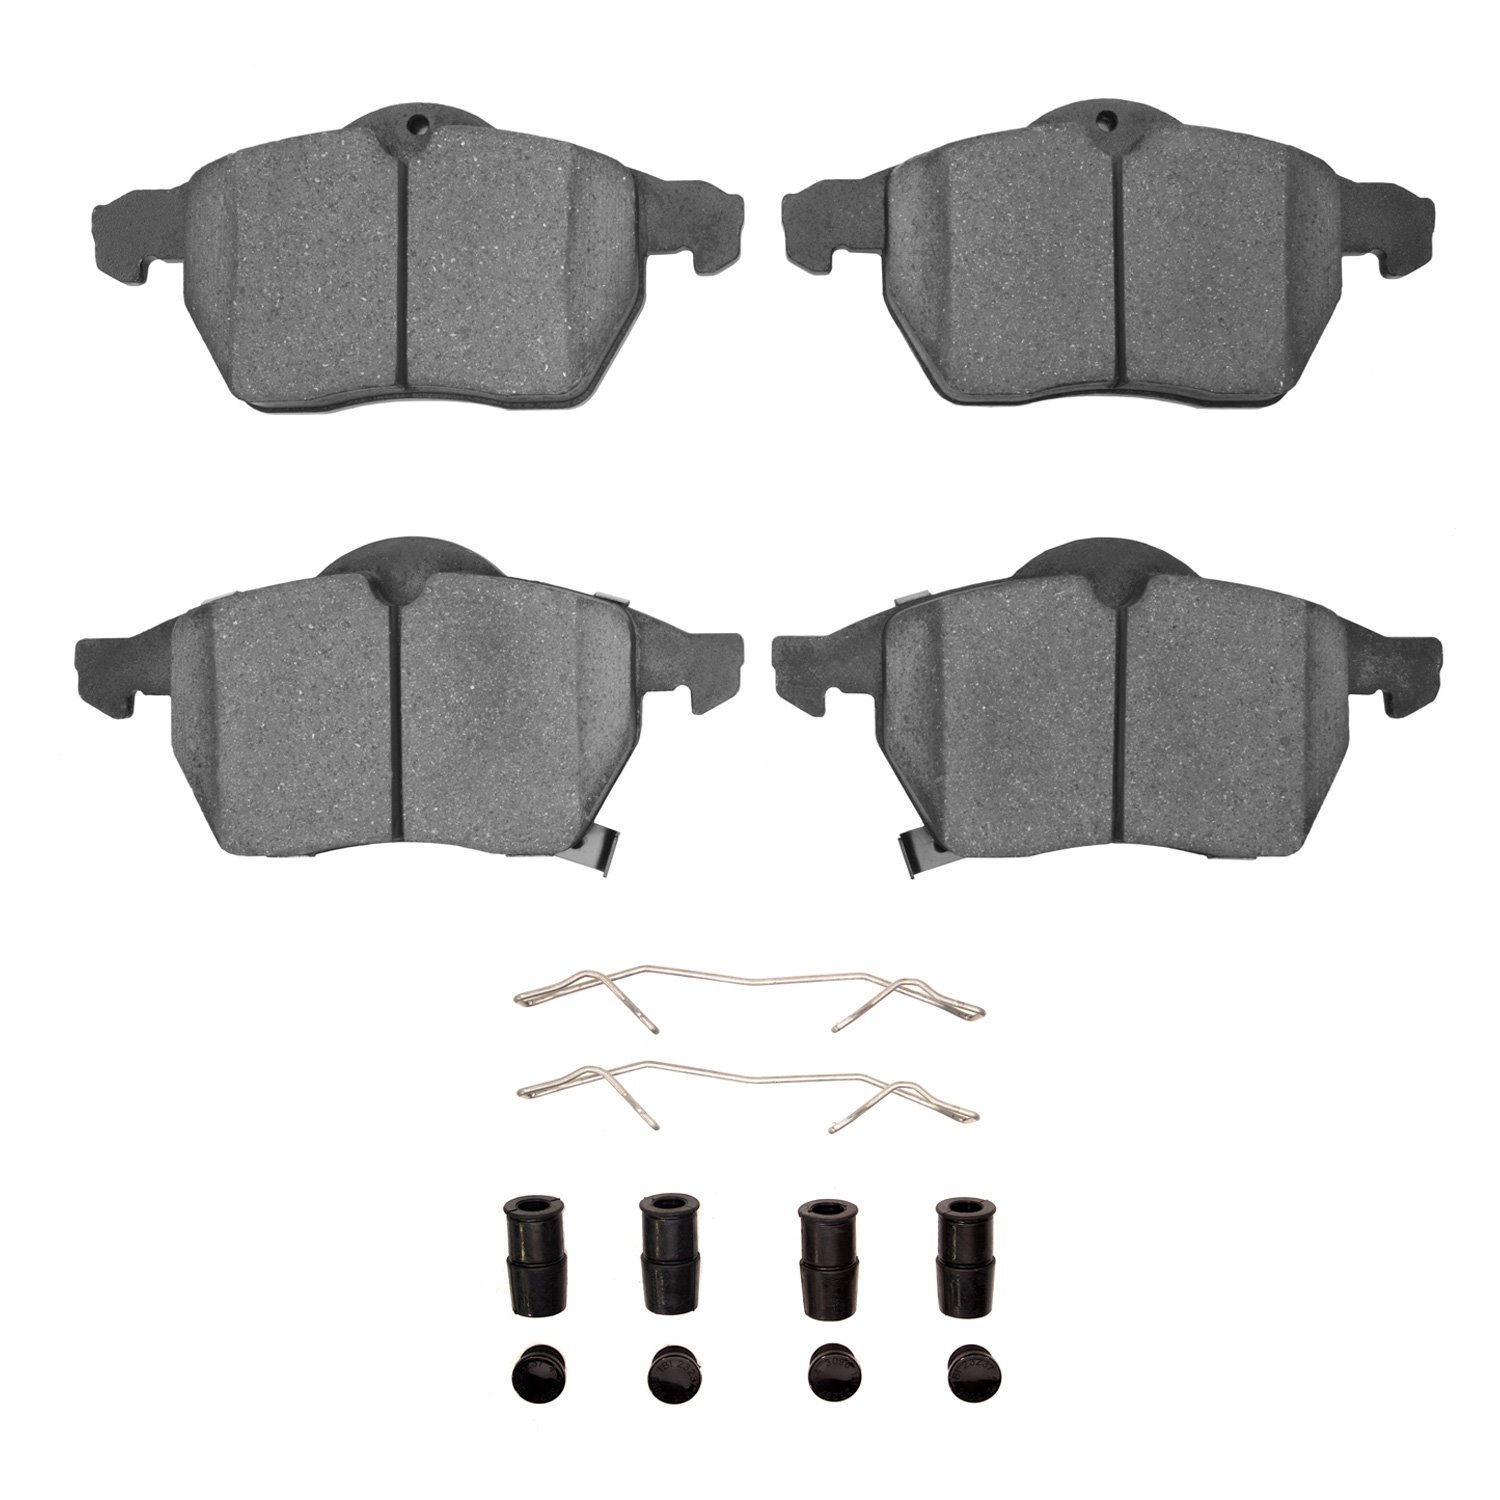 Semi-Metallic Brake Pads & Hardware Kit, 1997-2010 GM, Position: Front